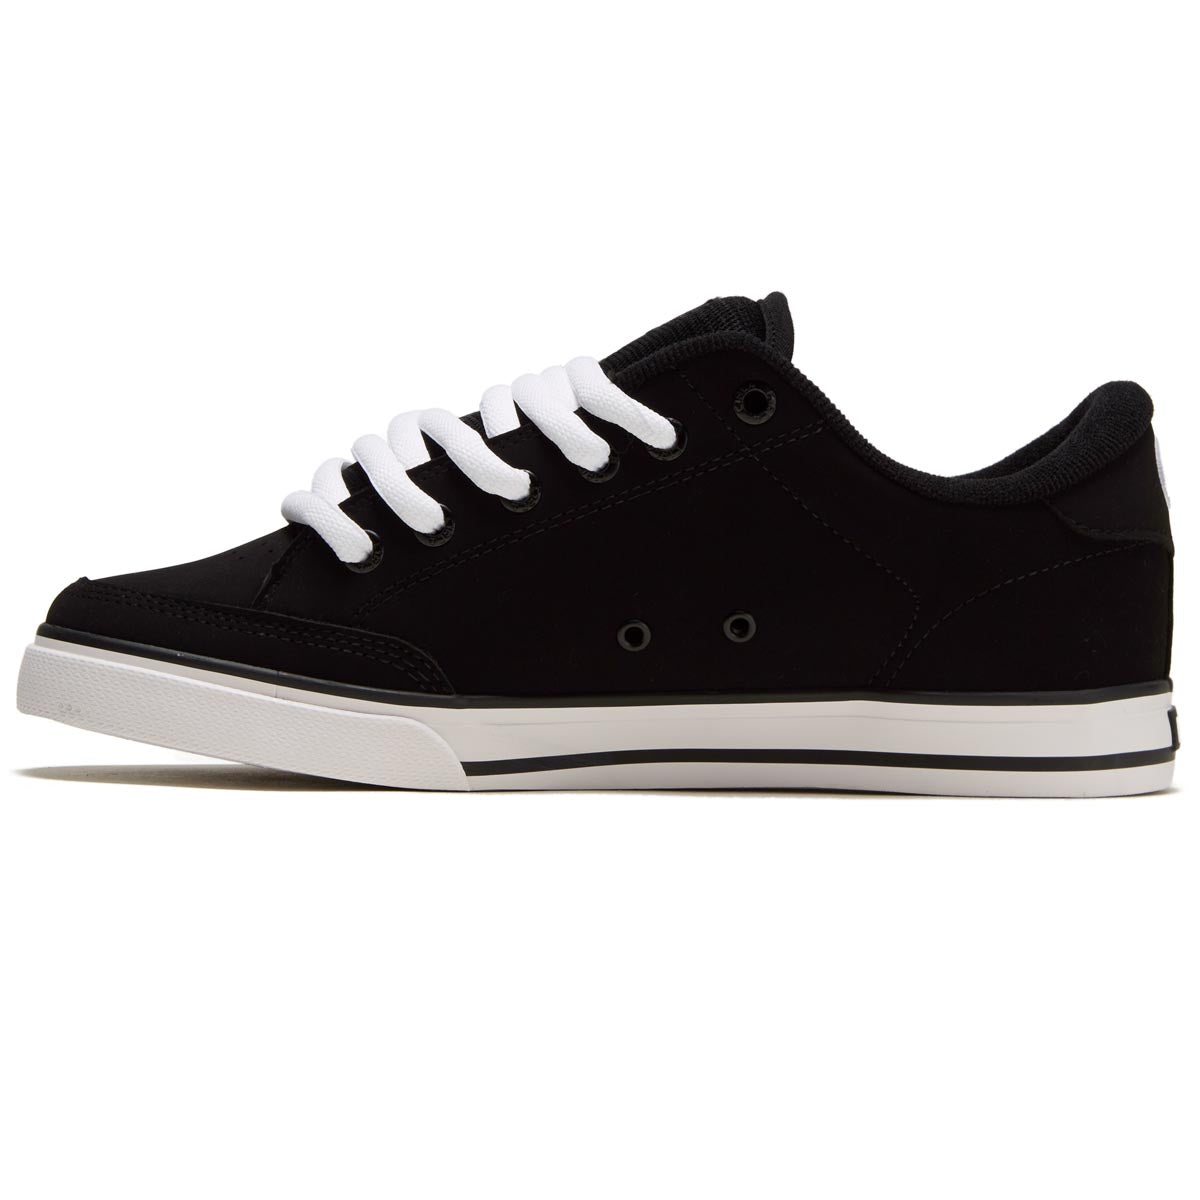 C1rca AL 50 Shoes - Black/White image 2